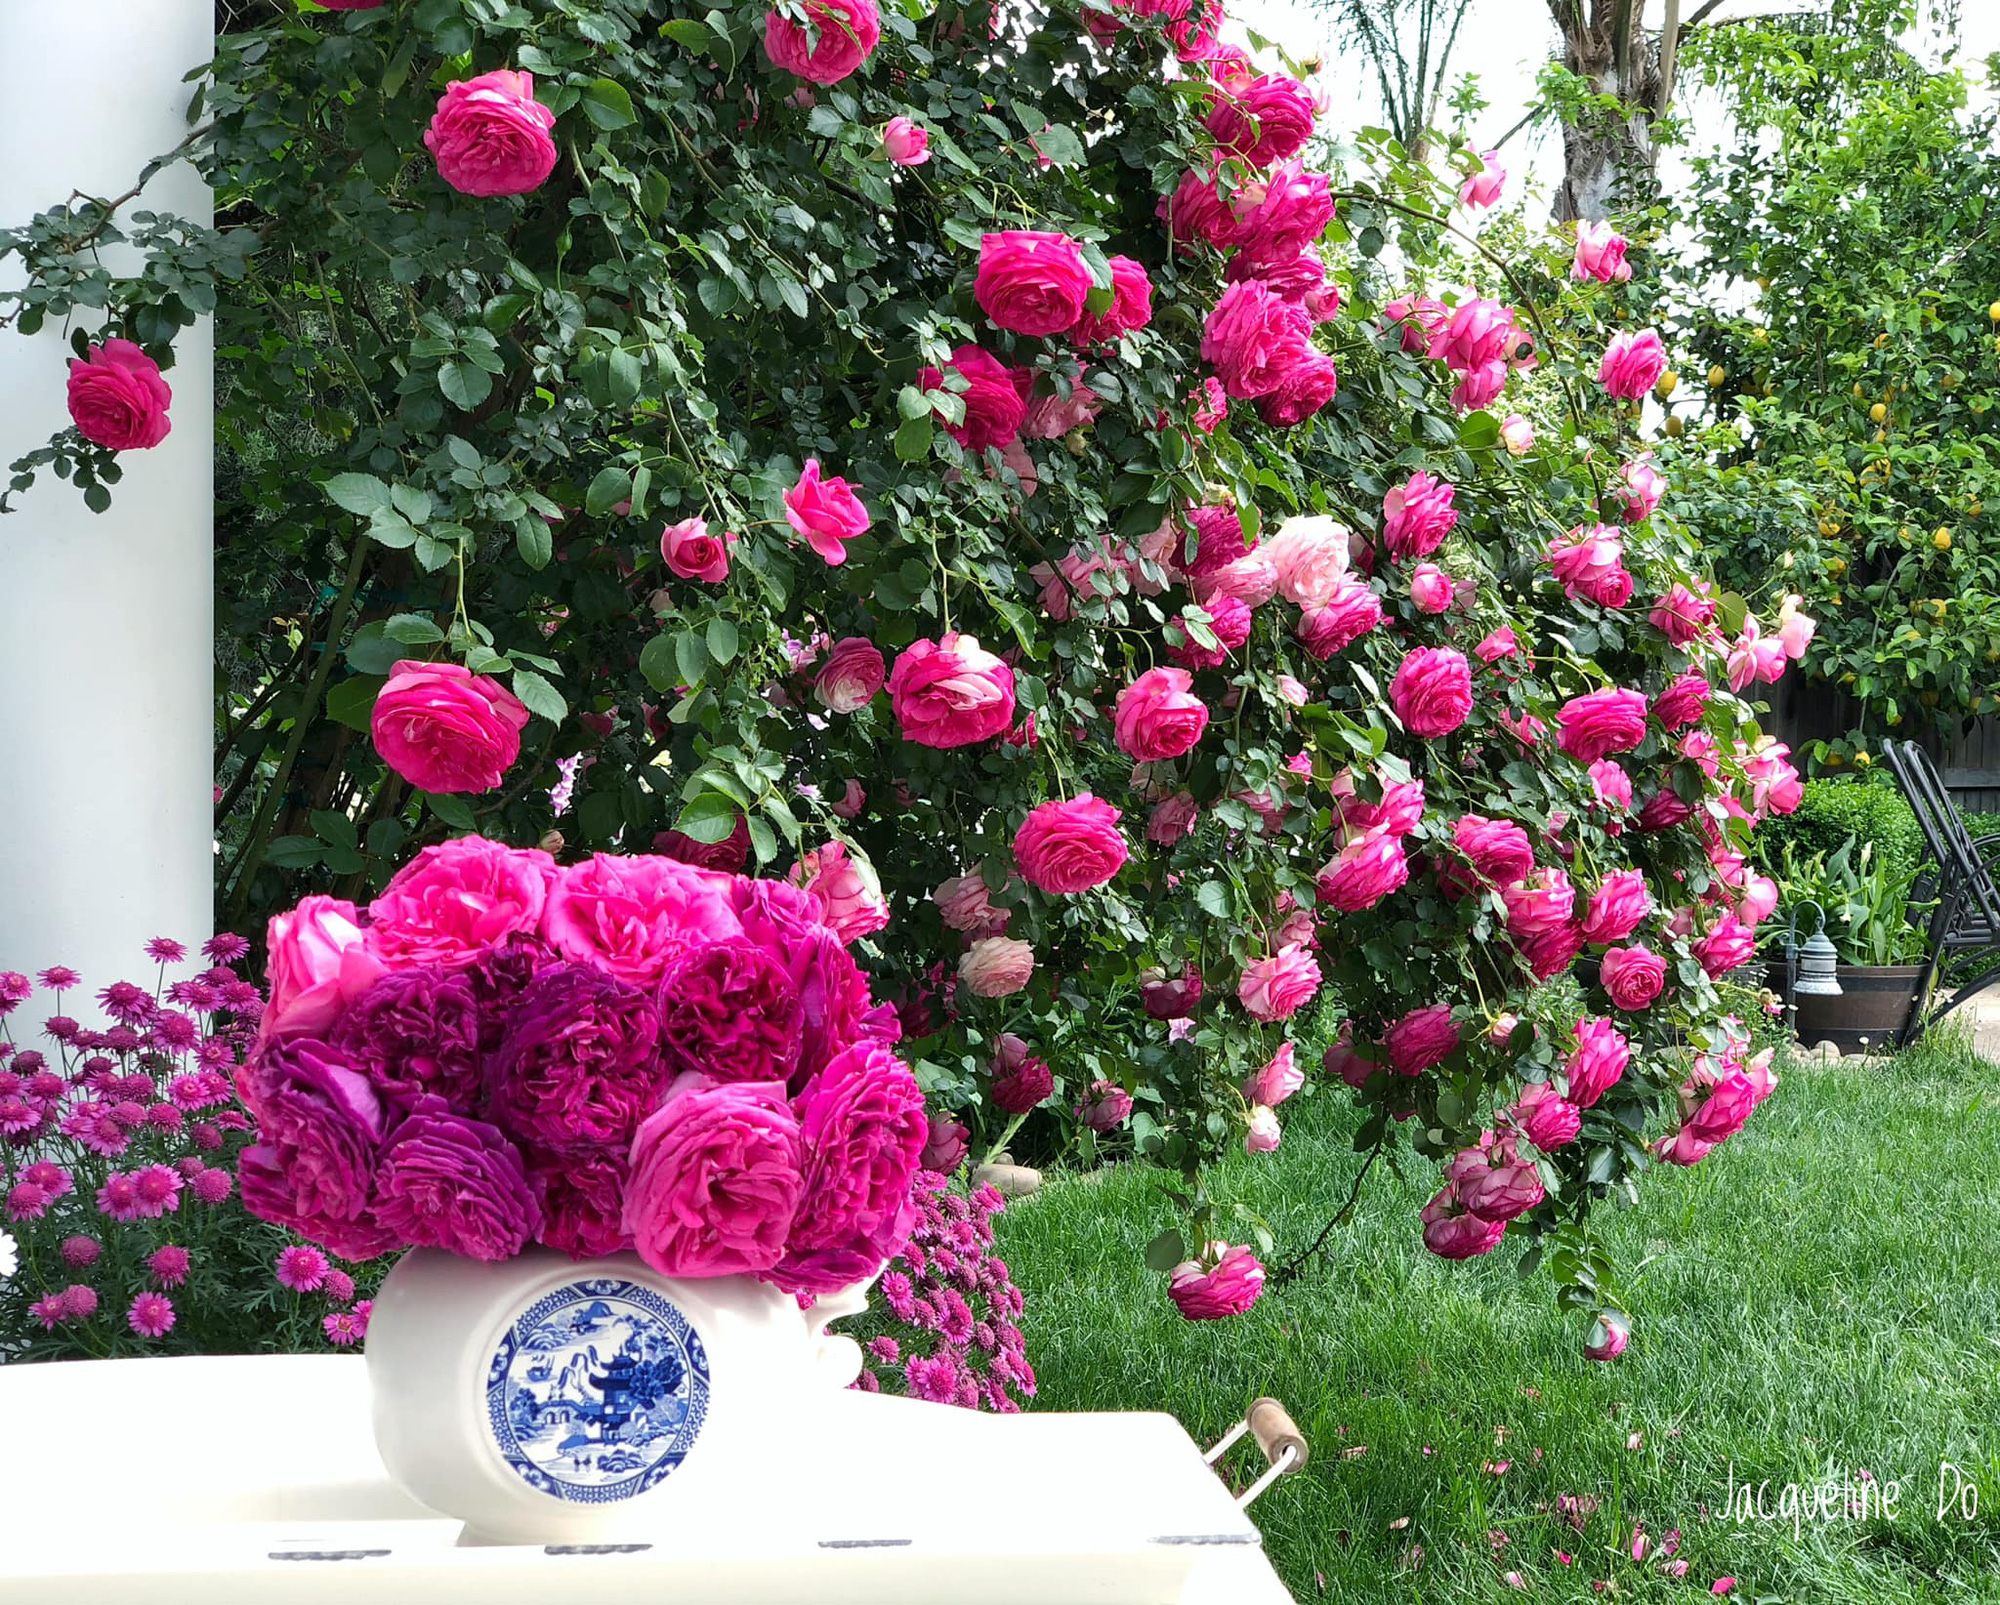 Ngẩn ngơ ngắm vườn hồng đẹp như cổ tích của mẹ Việt ở Mỹ - Ảnh 8.